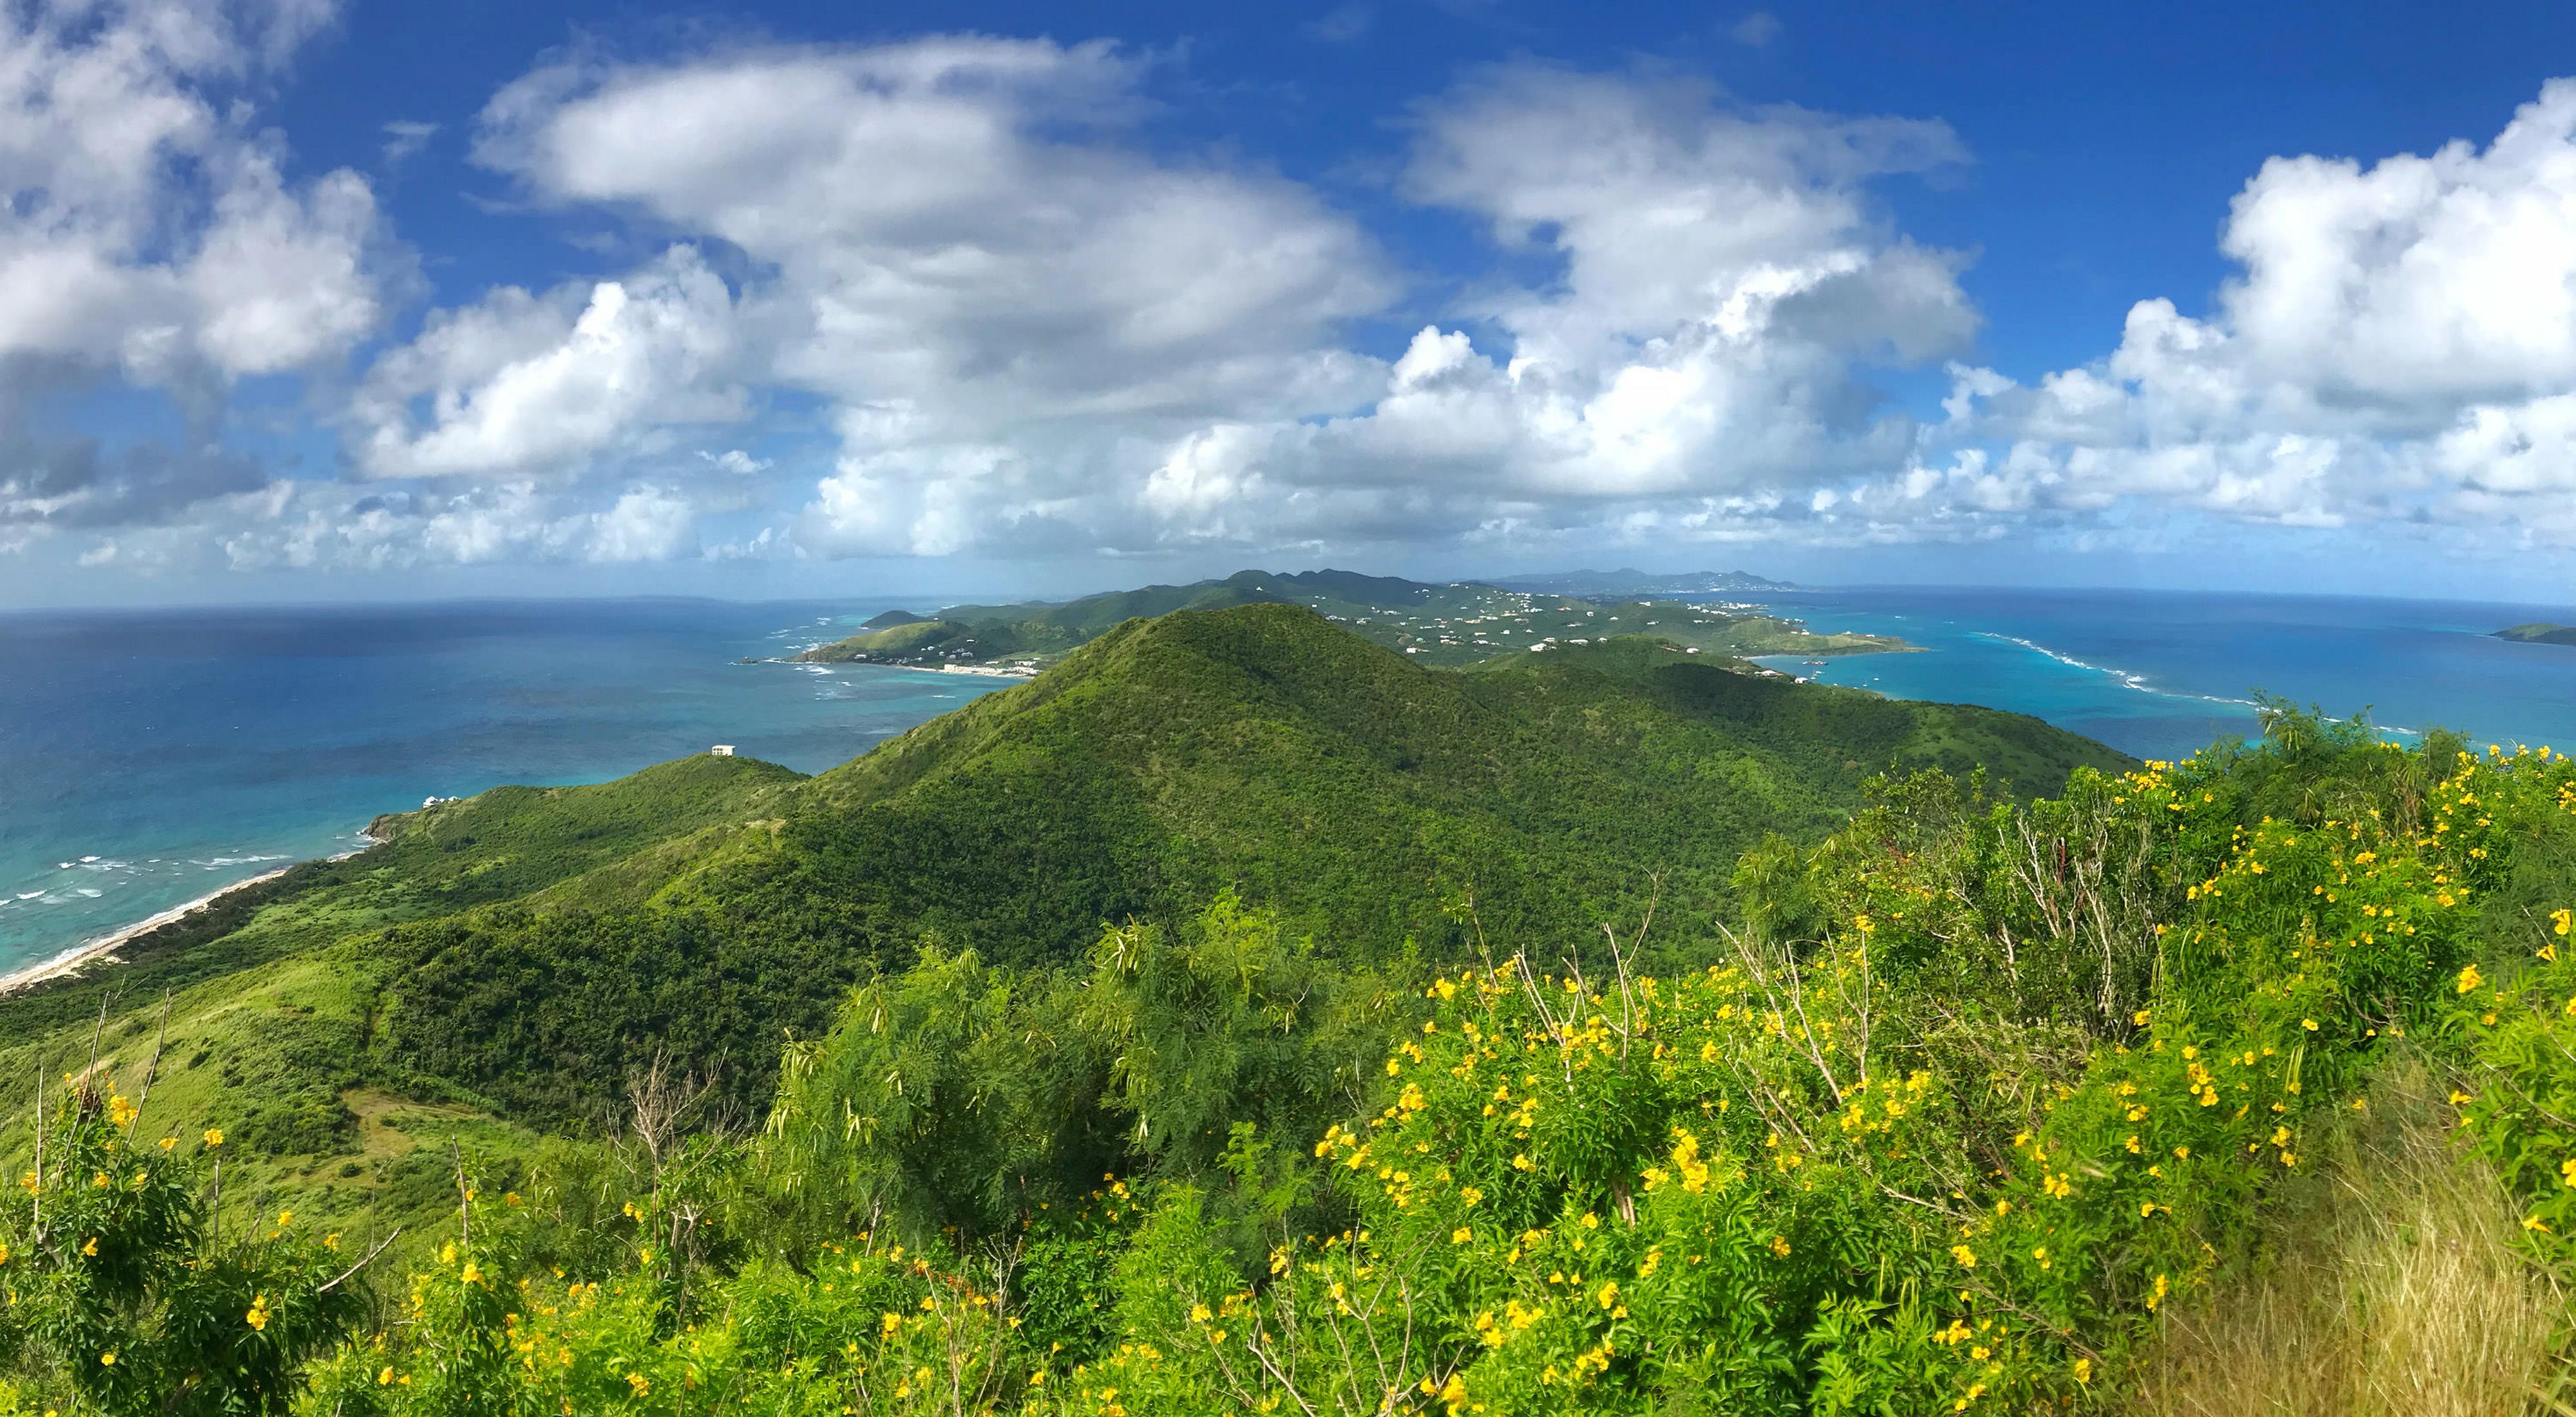 Visit St. Croix/US Virgin Islands